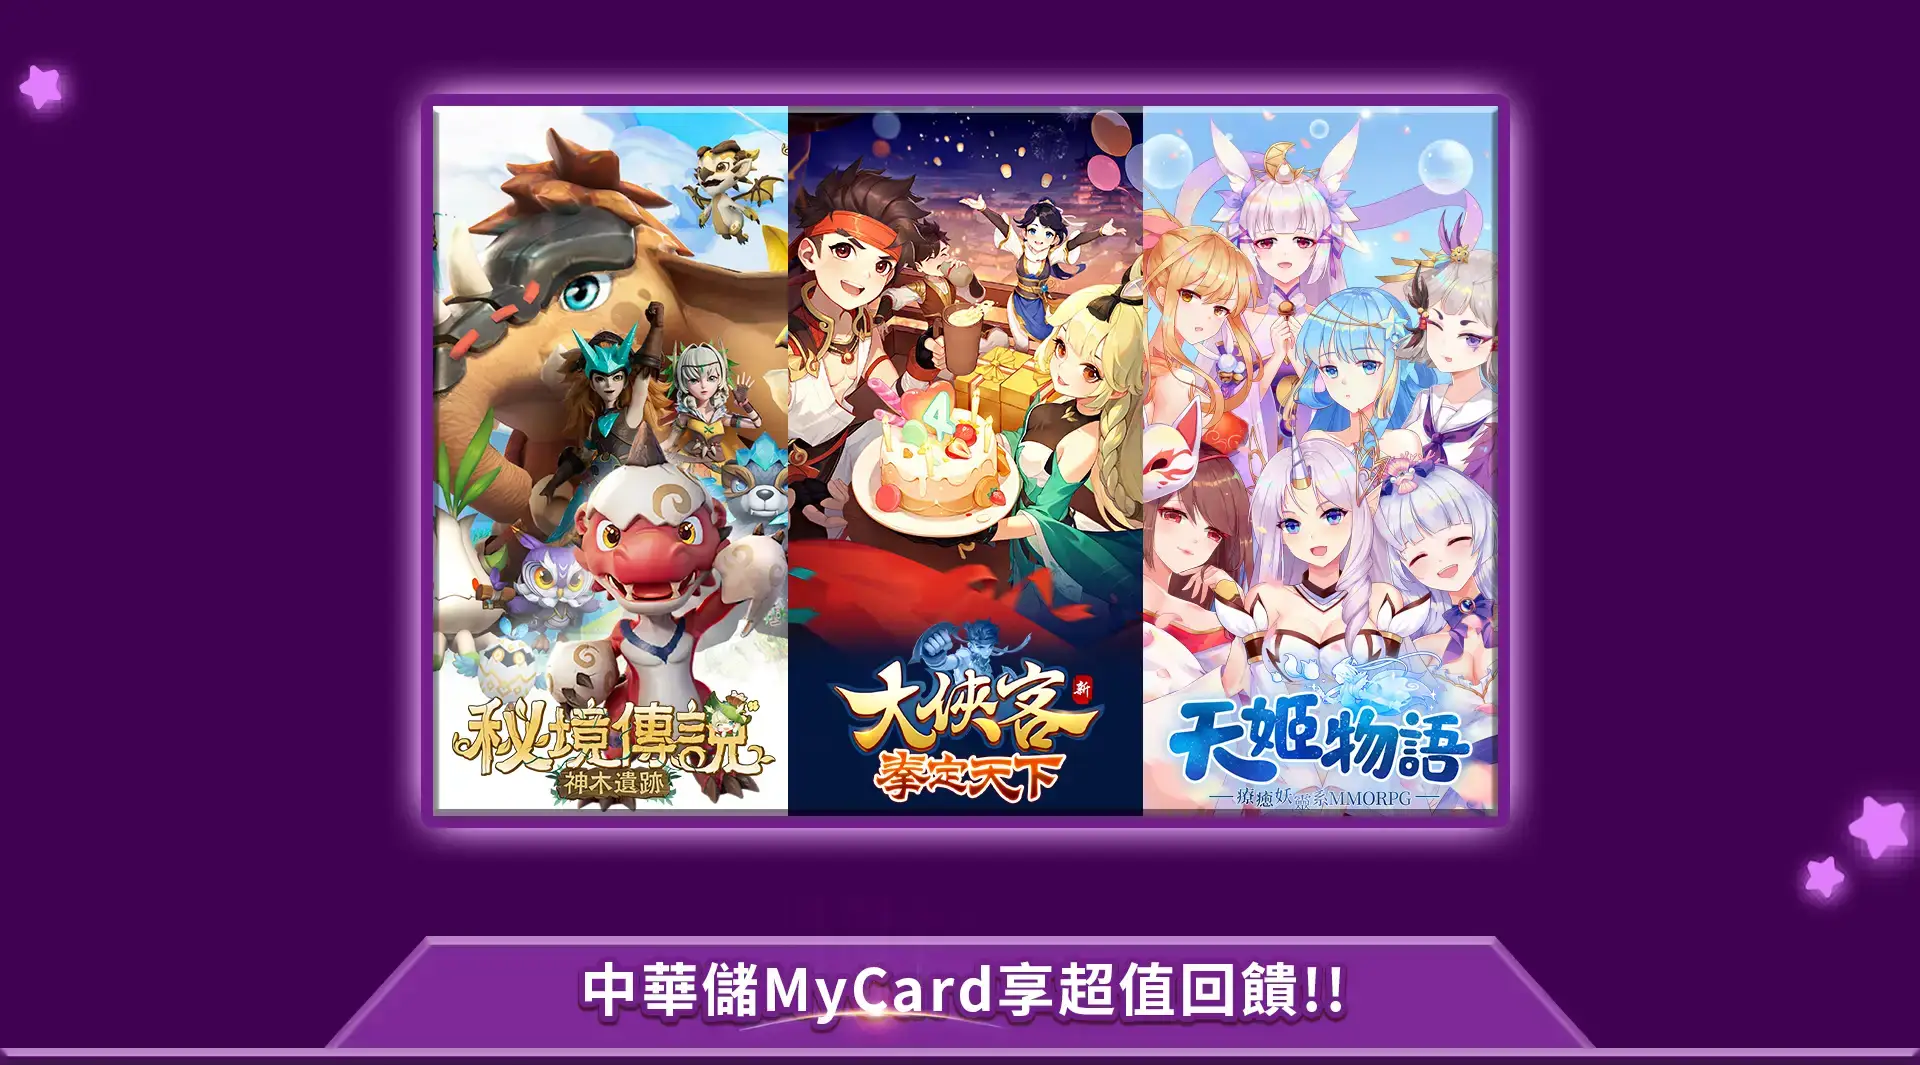   《四三九九》MyCard儲值享超值好禮回饋 | 中華電信